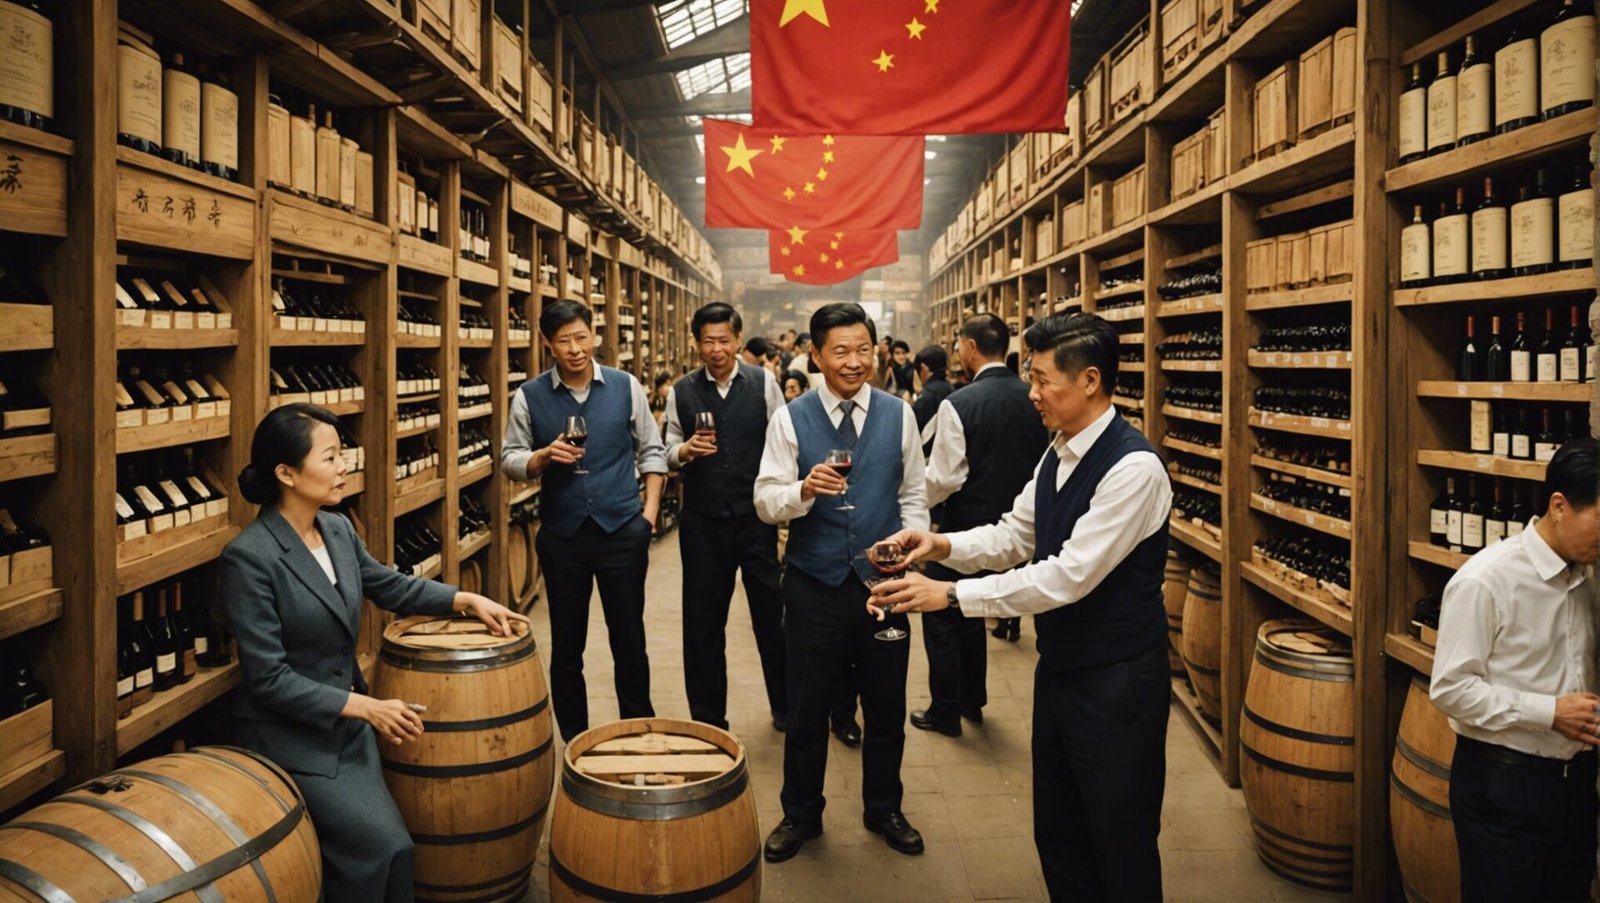 découvrez l'opportunité grandissante du marché du vin en chine et les défis potentiels qui pourraient en découler. une analyse fouillée pour saisir les enjeux de cette ruée vers l'or ou de cette catastrophe annoncée.